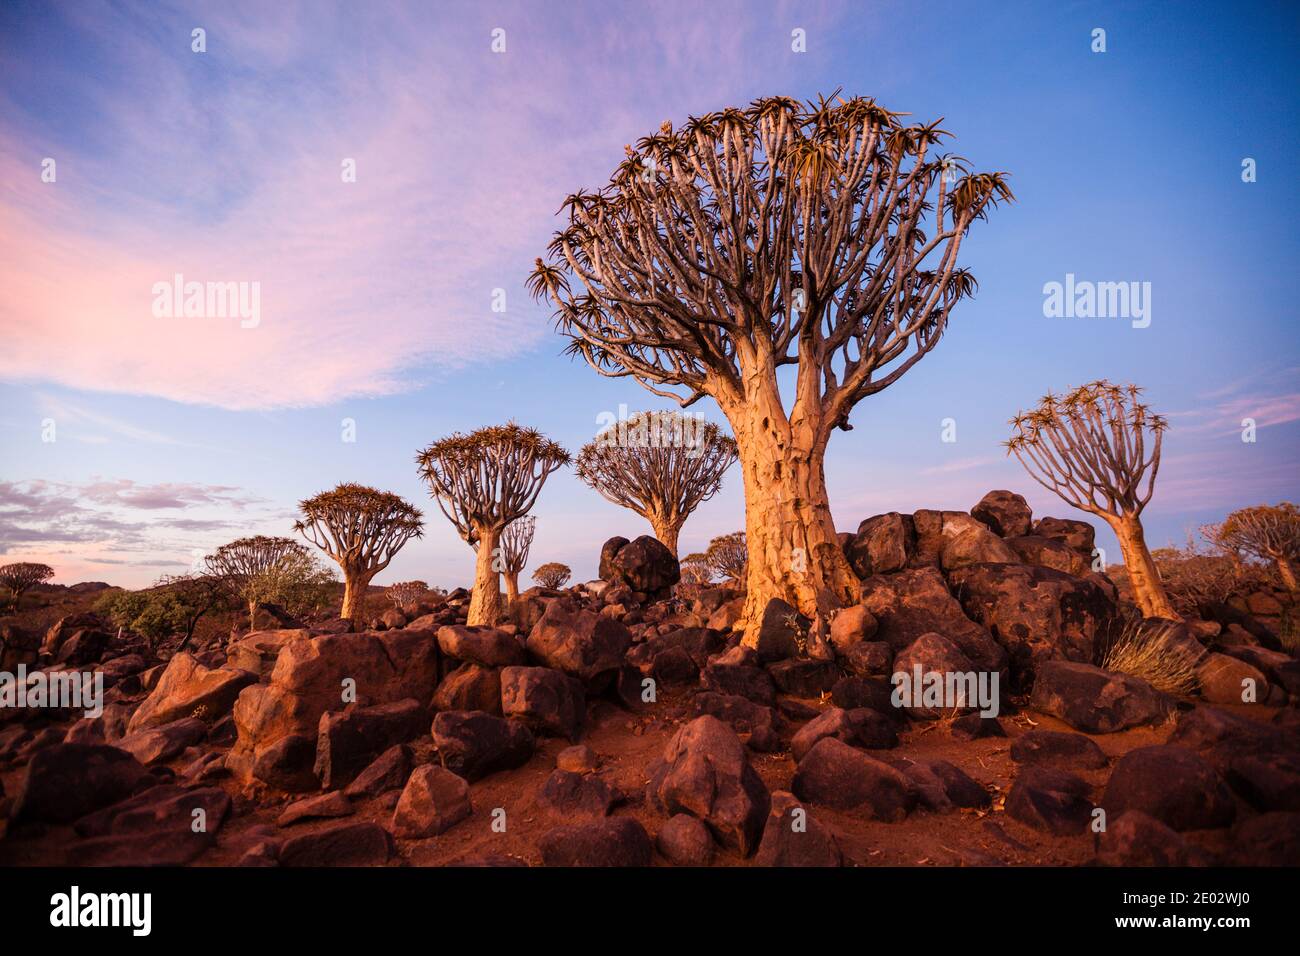 Bosque Quivertree en Sunset, Aloidendron dichotomum, Keetmanshoop, Namibia Foto de stock